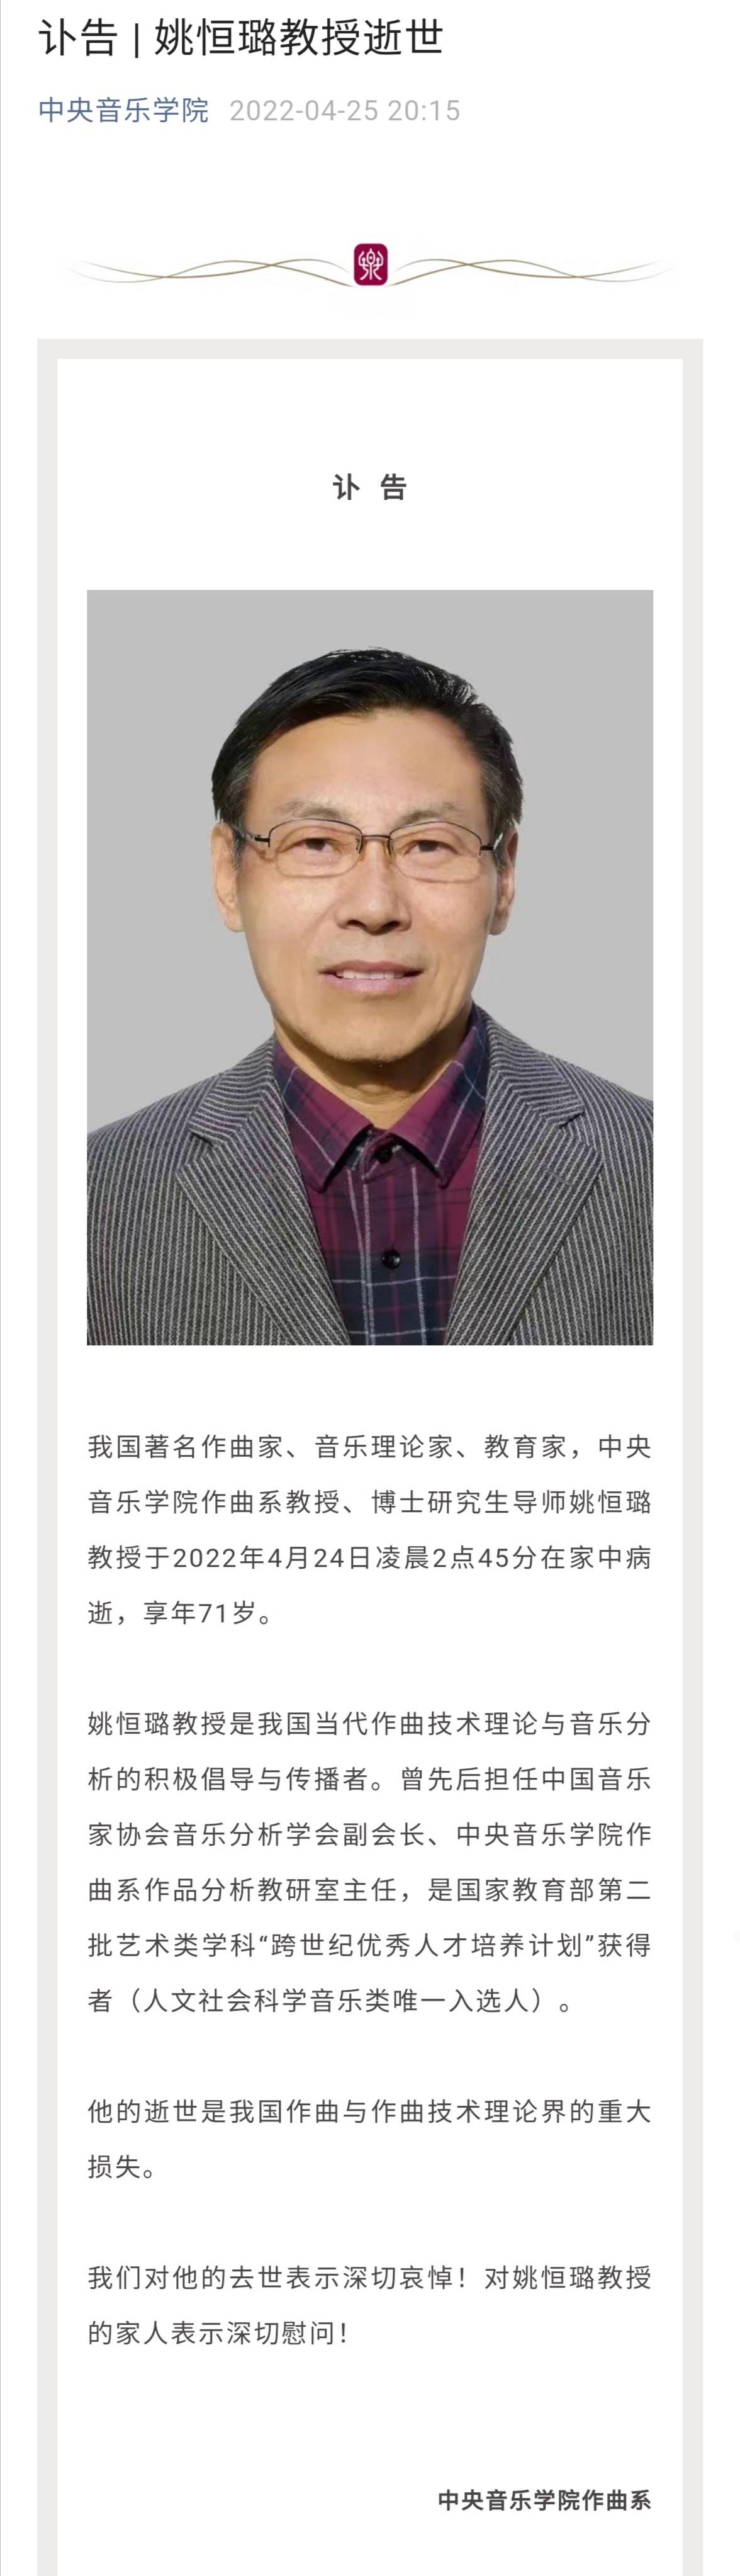 中央音乐学院作曲系教授姚恒璐教授病逝 享年71岁